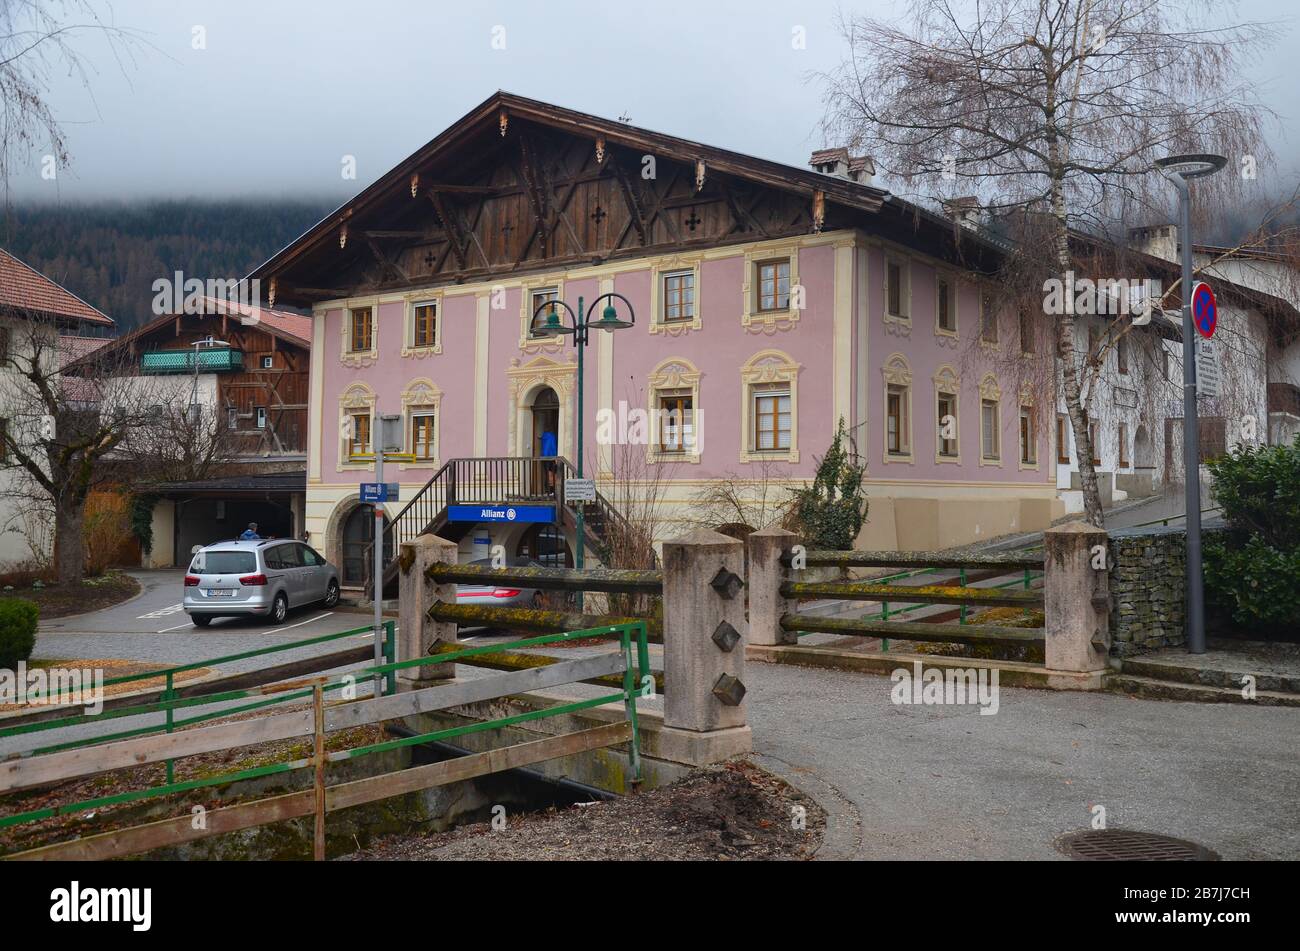 Axams, Tirolo, Österreich: ein Bergdorf bei Innsbruck Foto Stock